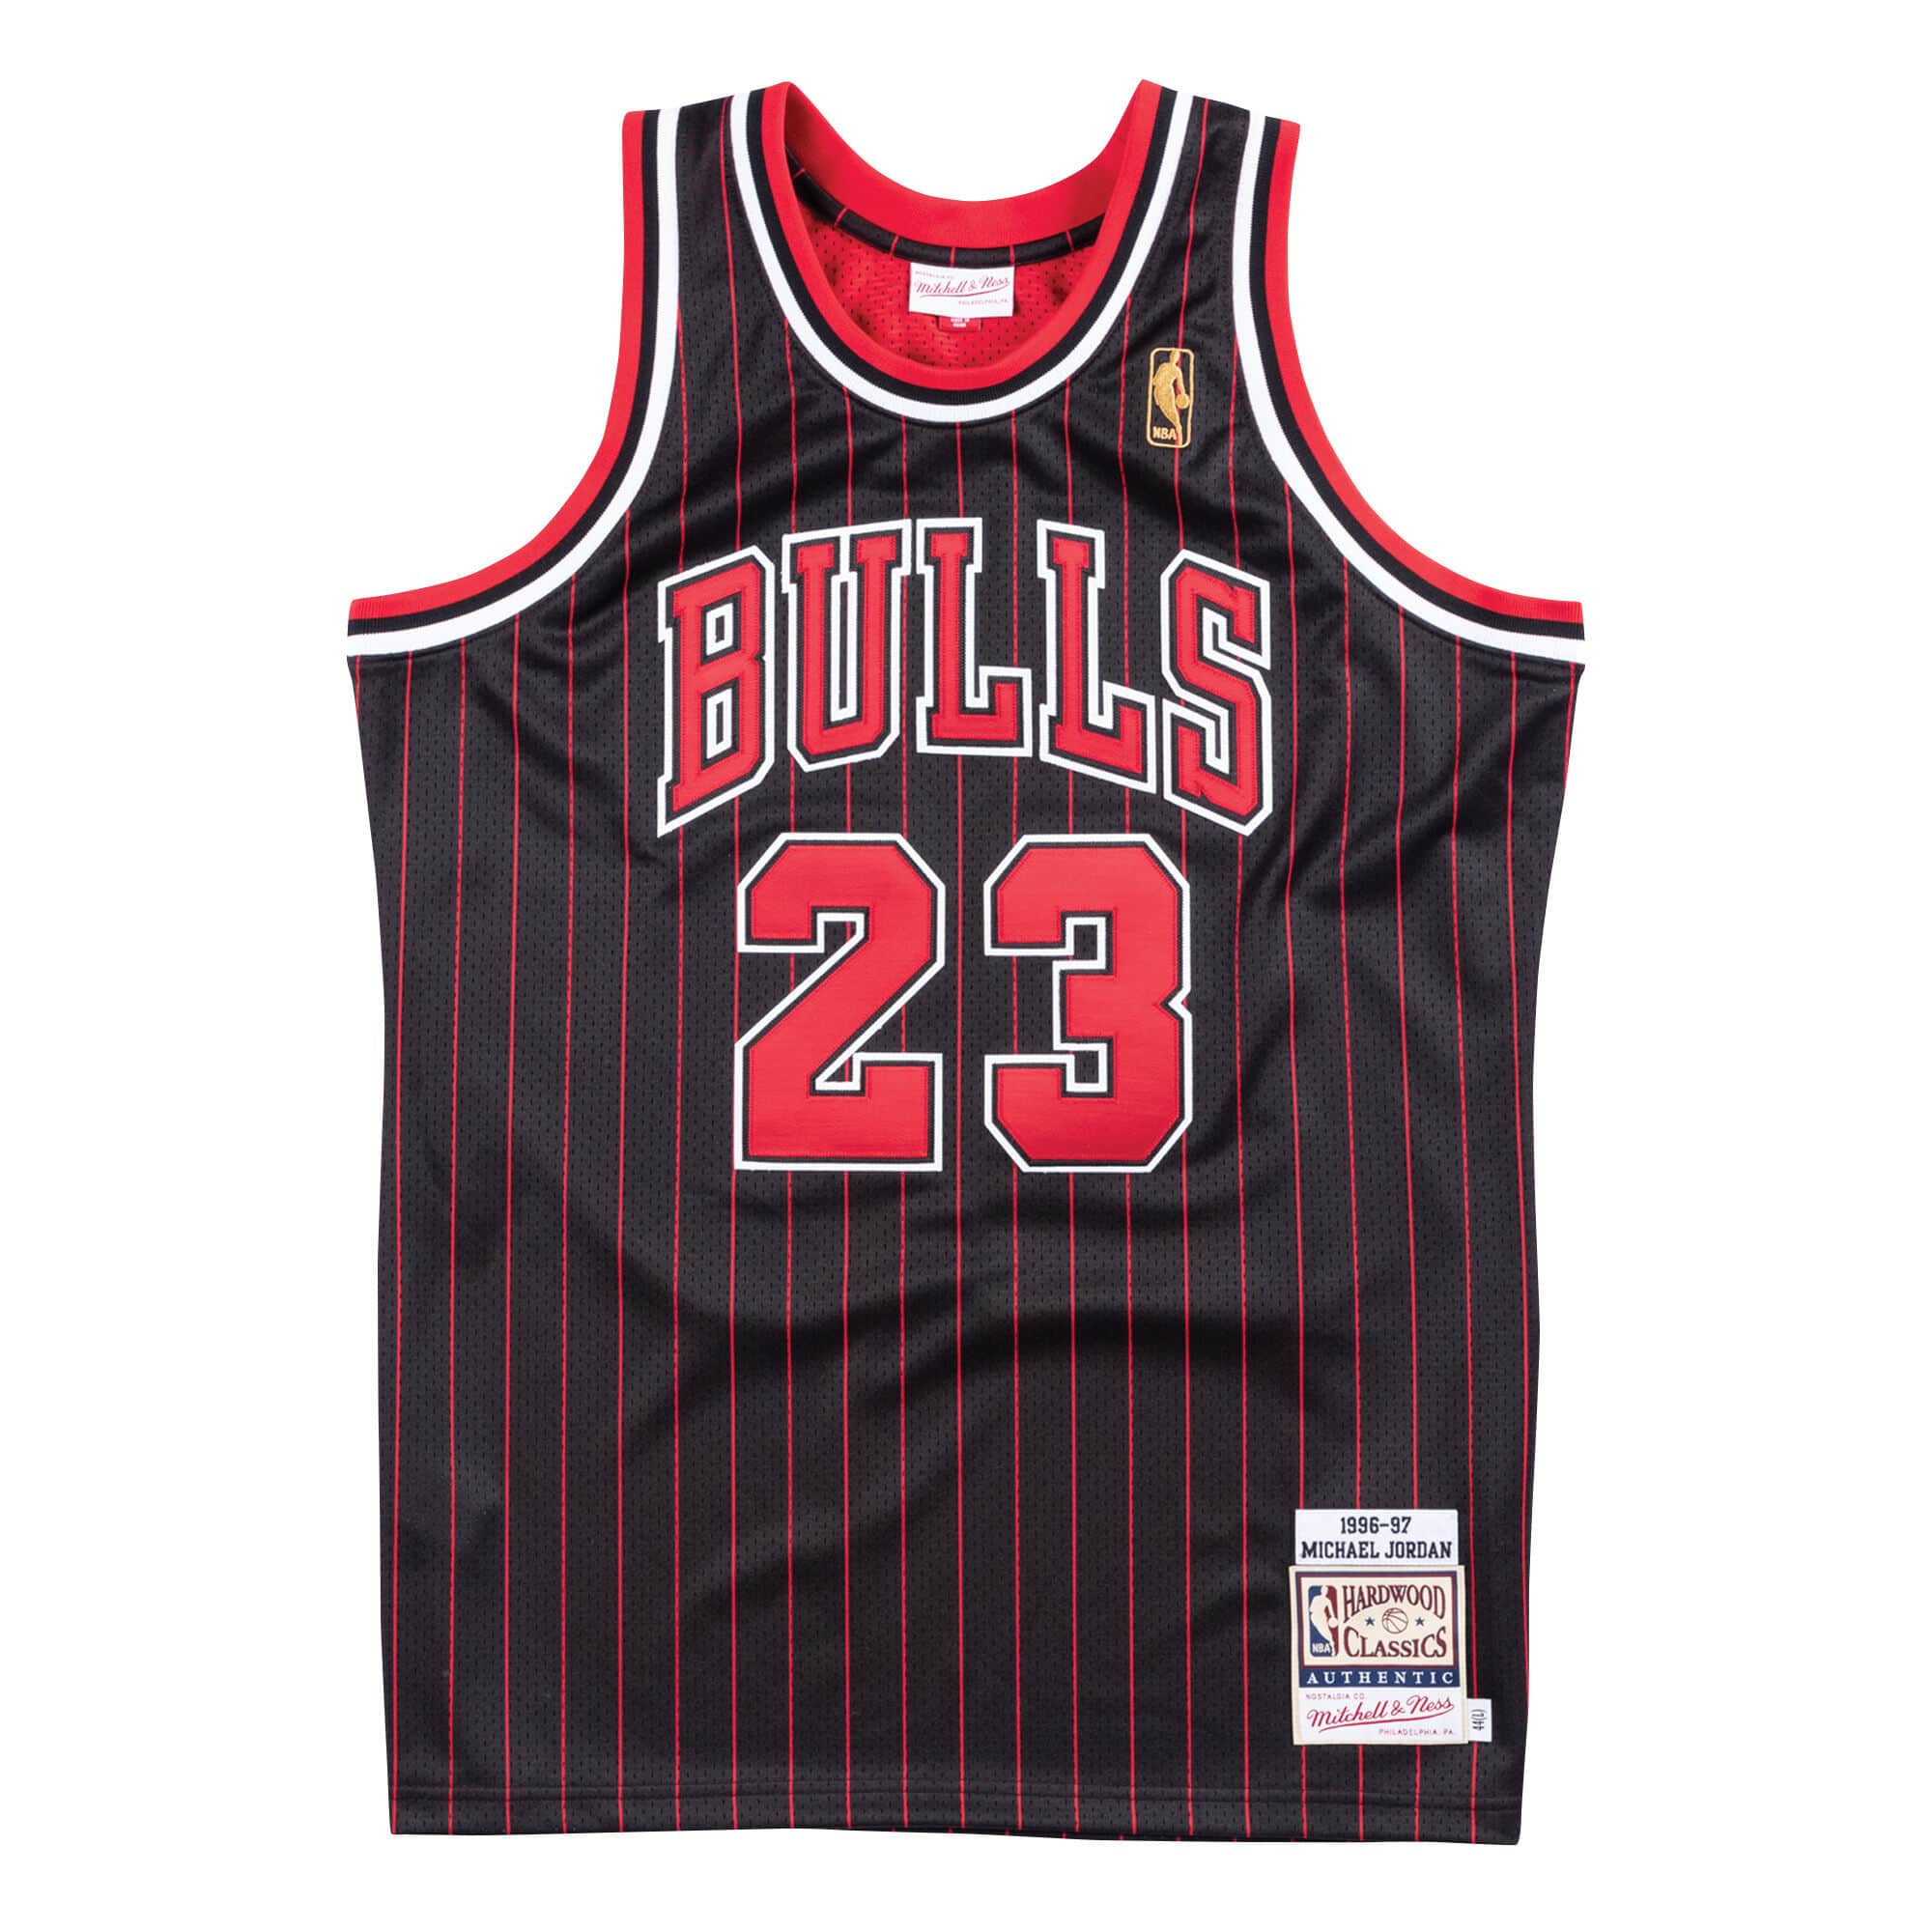  Mitchell & Ness Chicago Bulls NBA 40th Anniversary